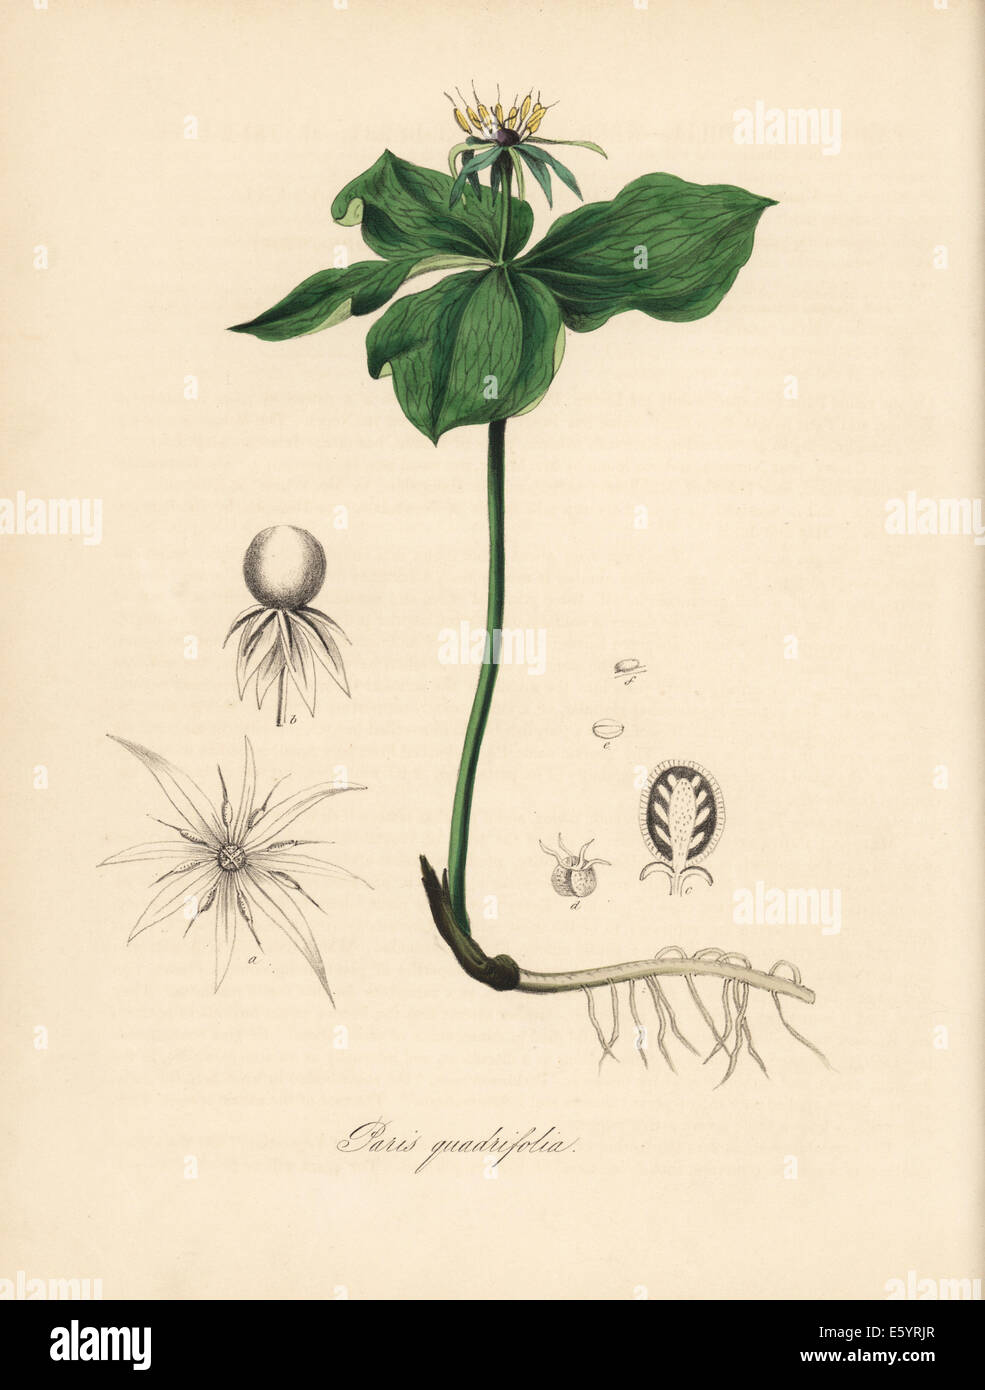 Herb Paris, Paris quadrifolia. Stock Photo